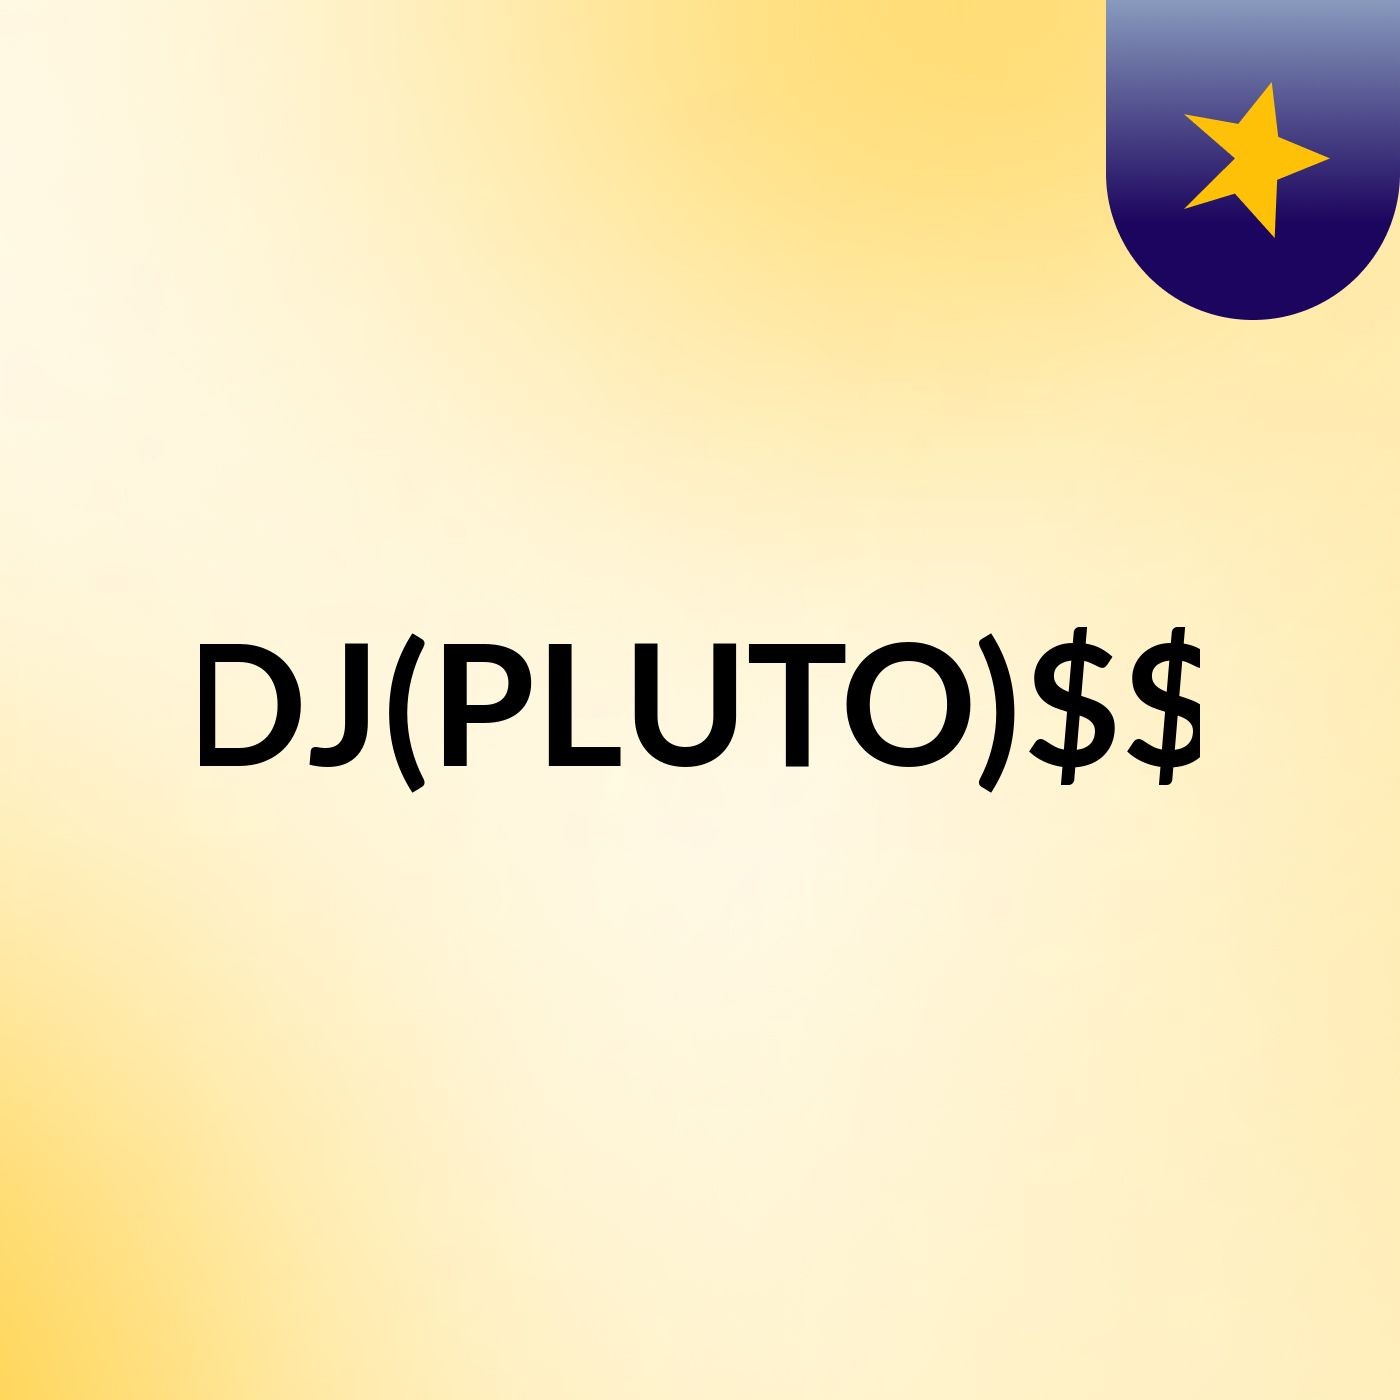 DJ(PLUTO)$$